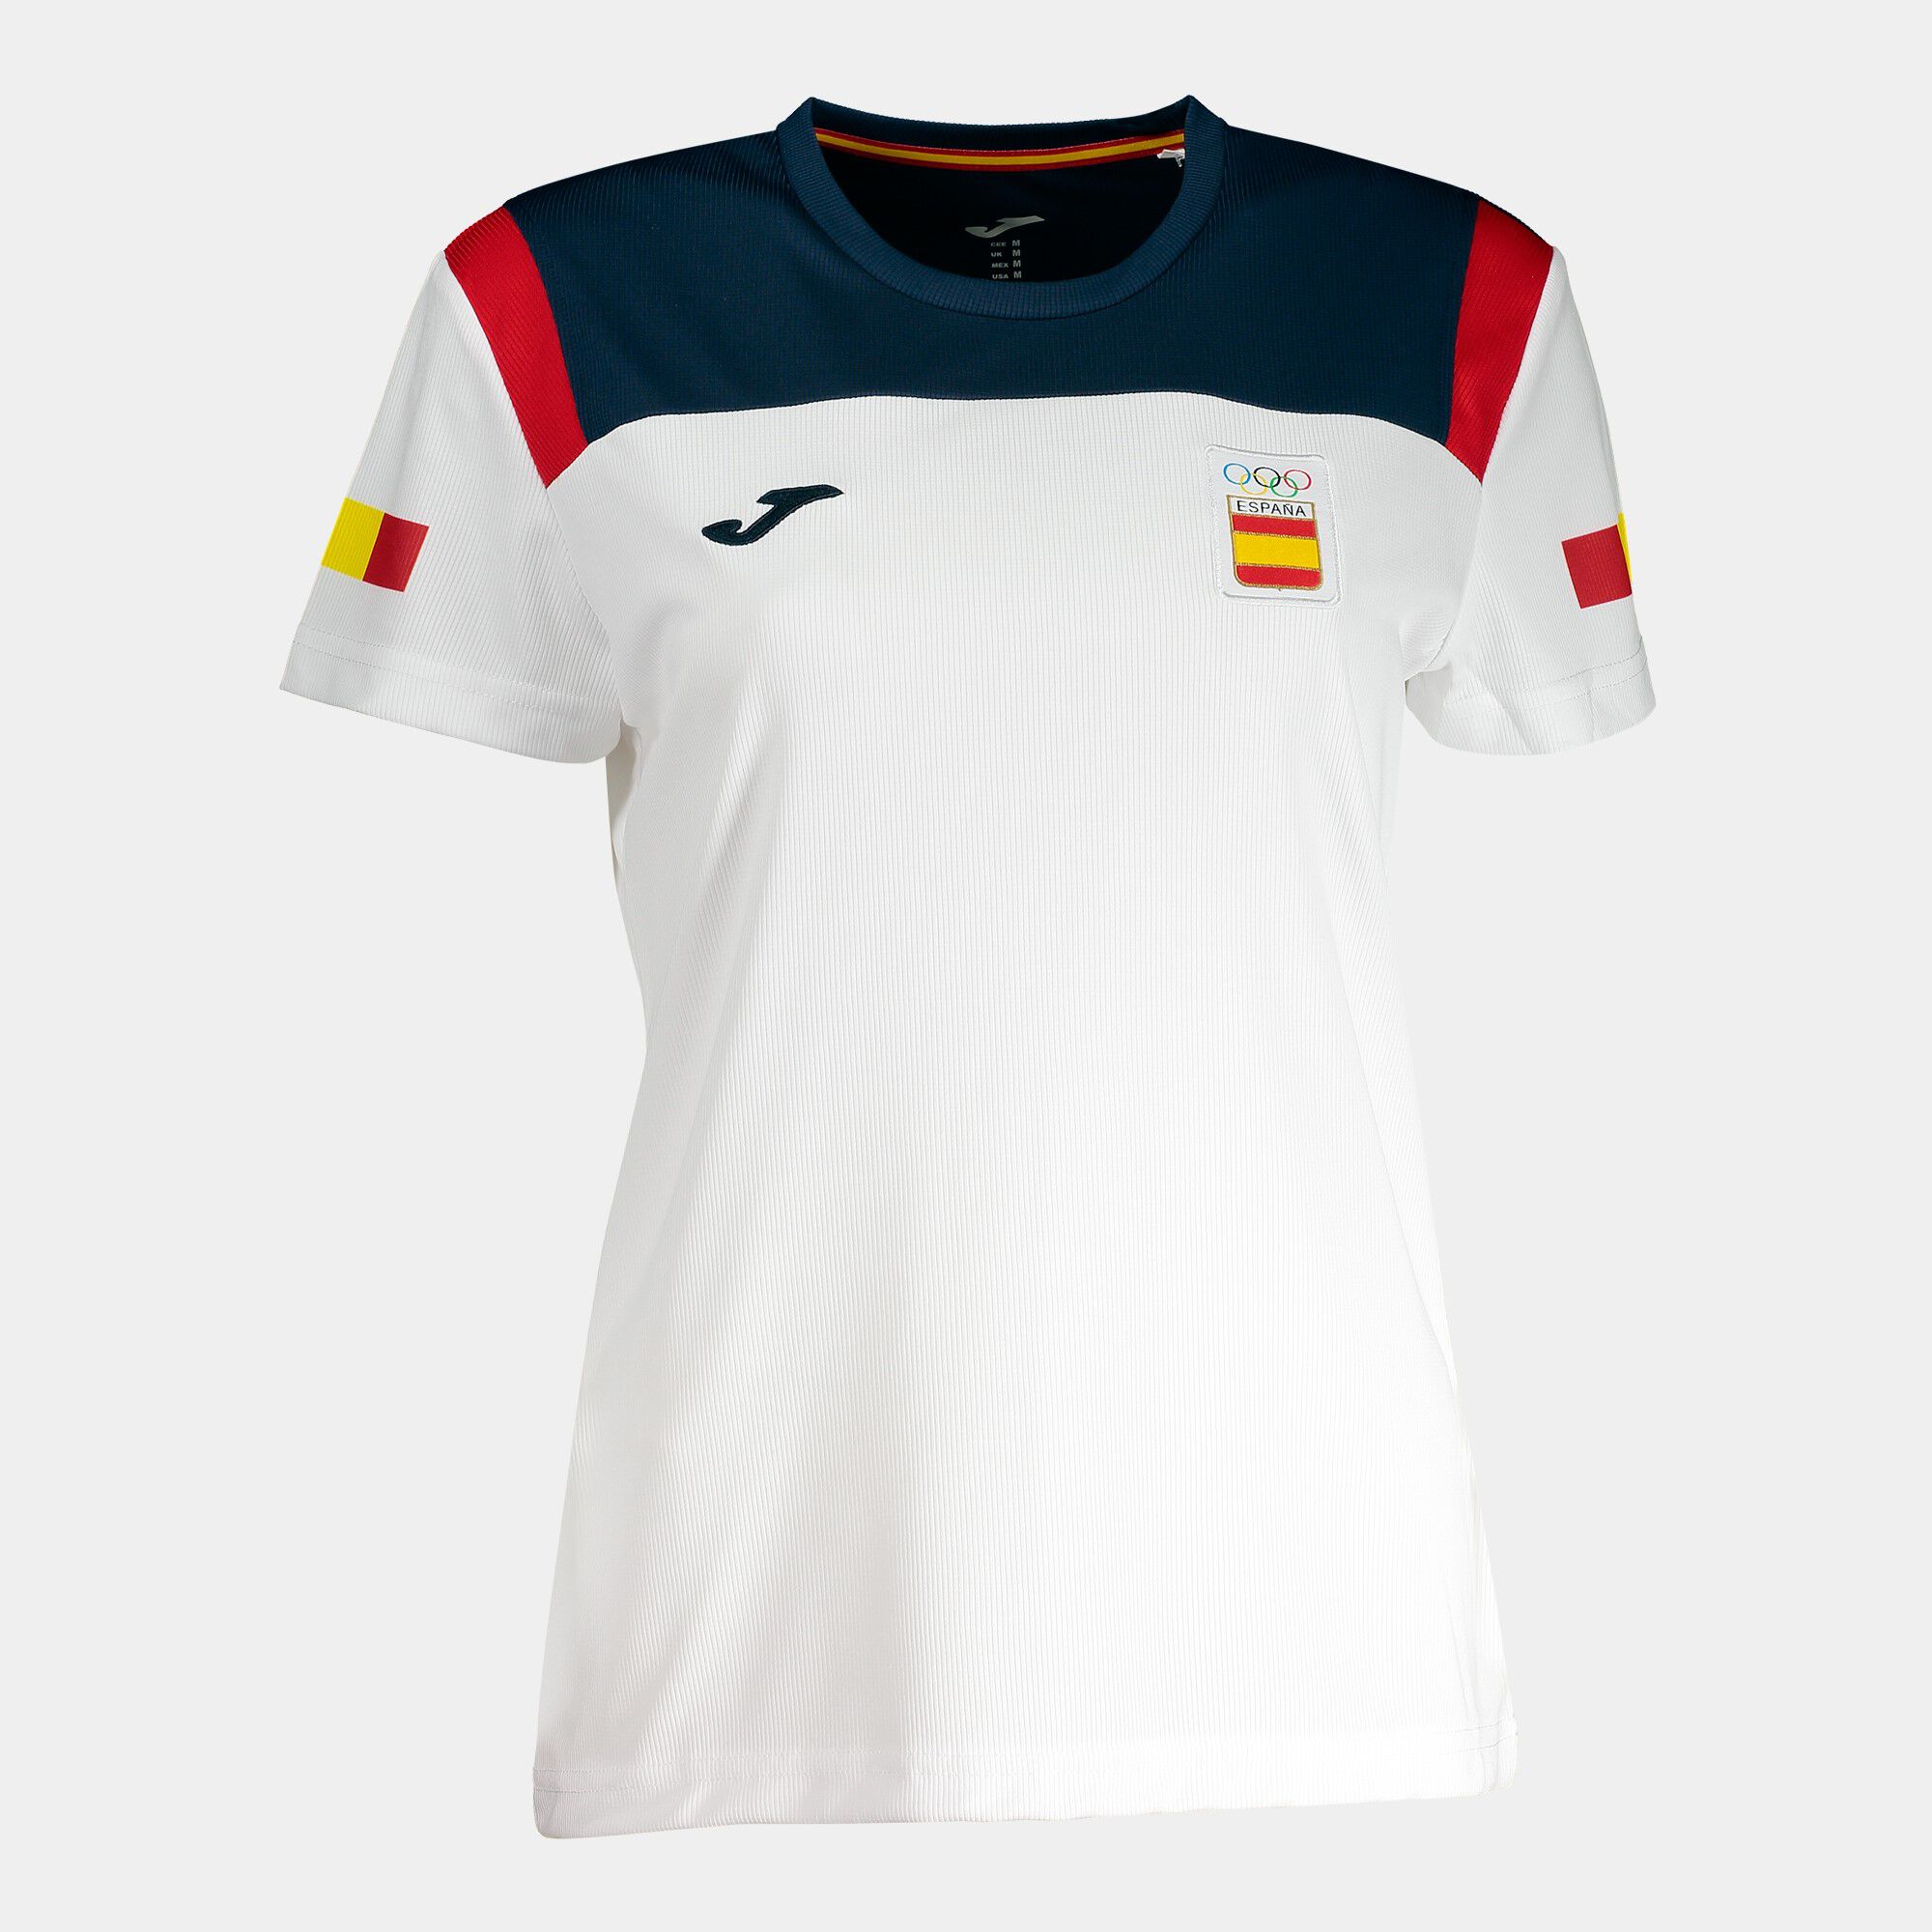 Camiseta manga corta podium Comité Olímpico Español mujer